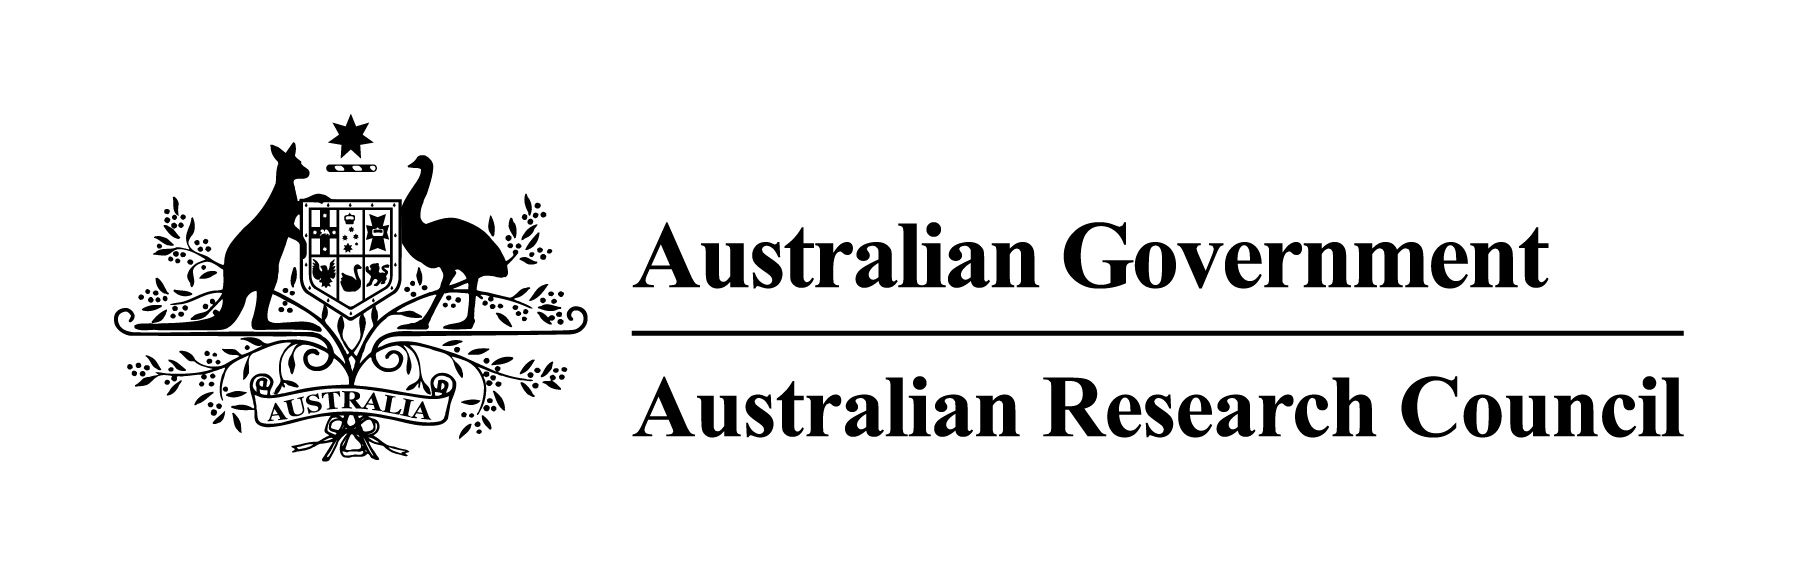 australian research council gov crest inline black